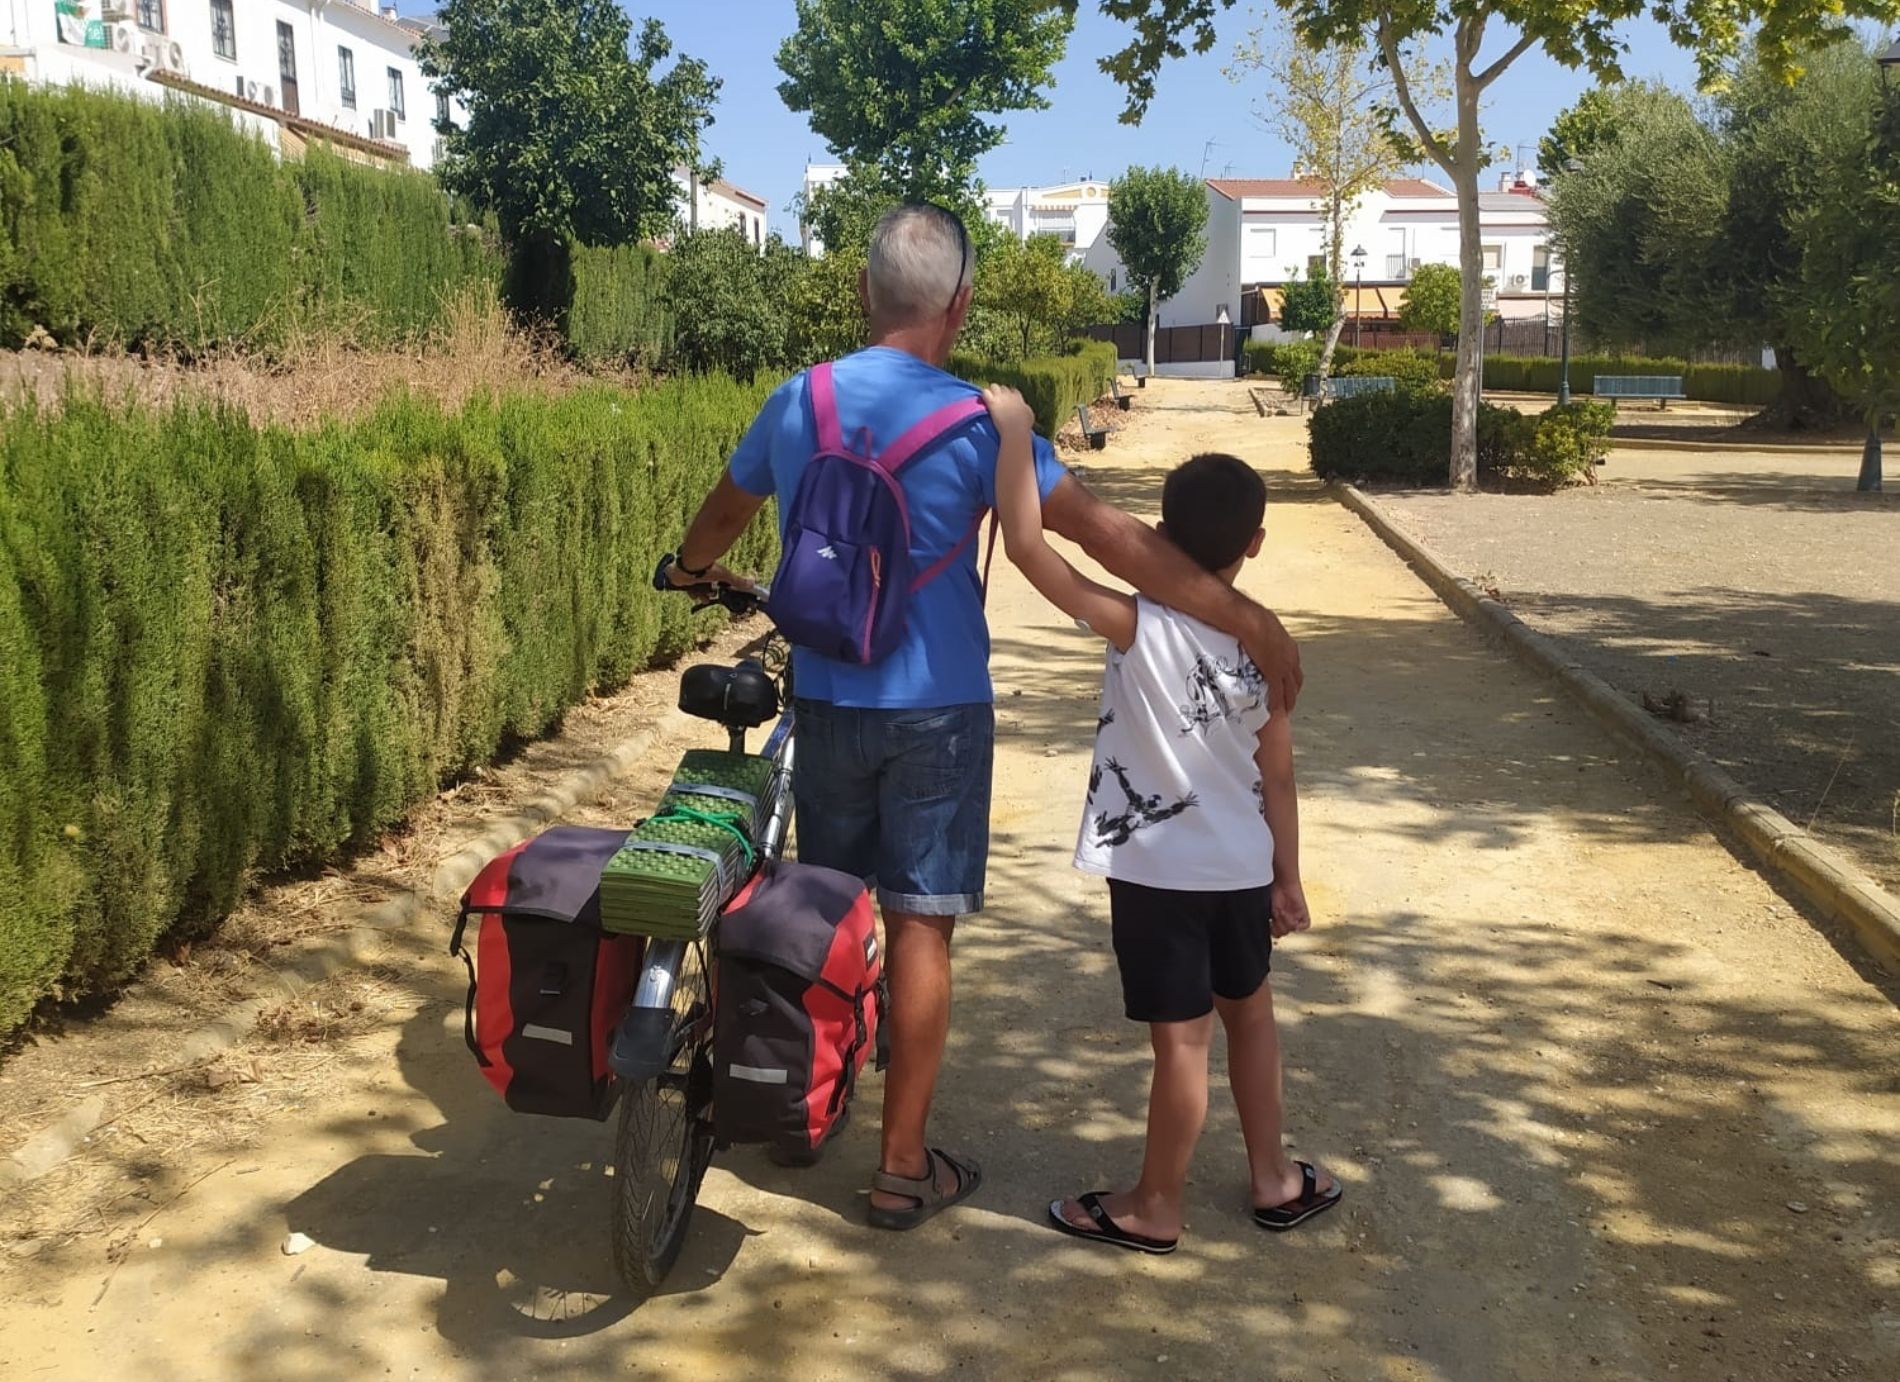 Más de 3.600 km en bicicleta para recaudar fondos para investigar la diabetes de su nieto. Foto: Europa Press